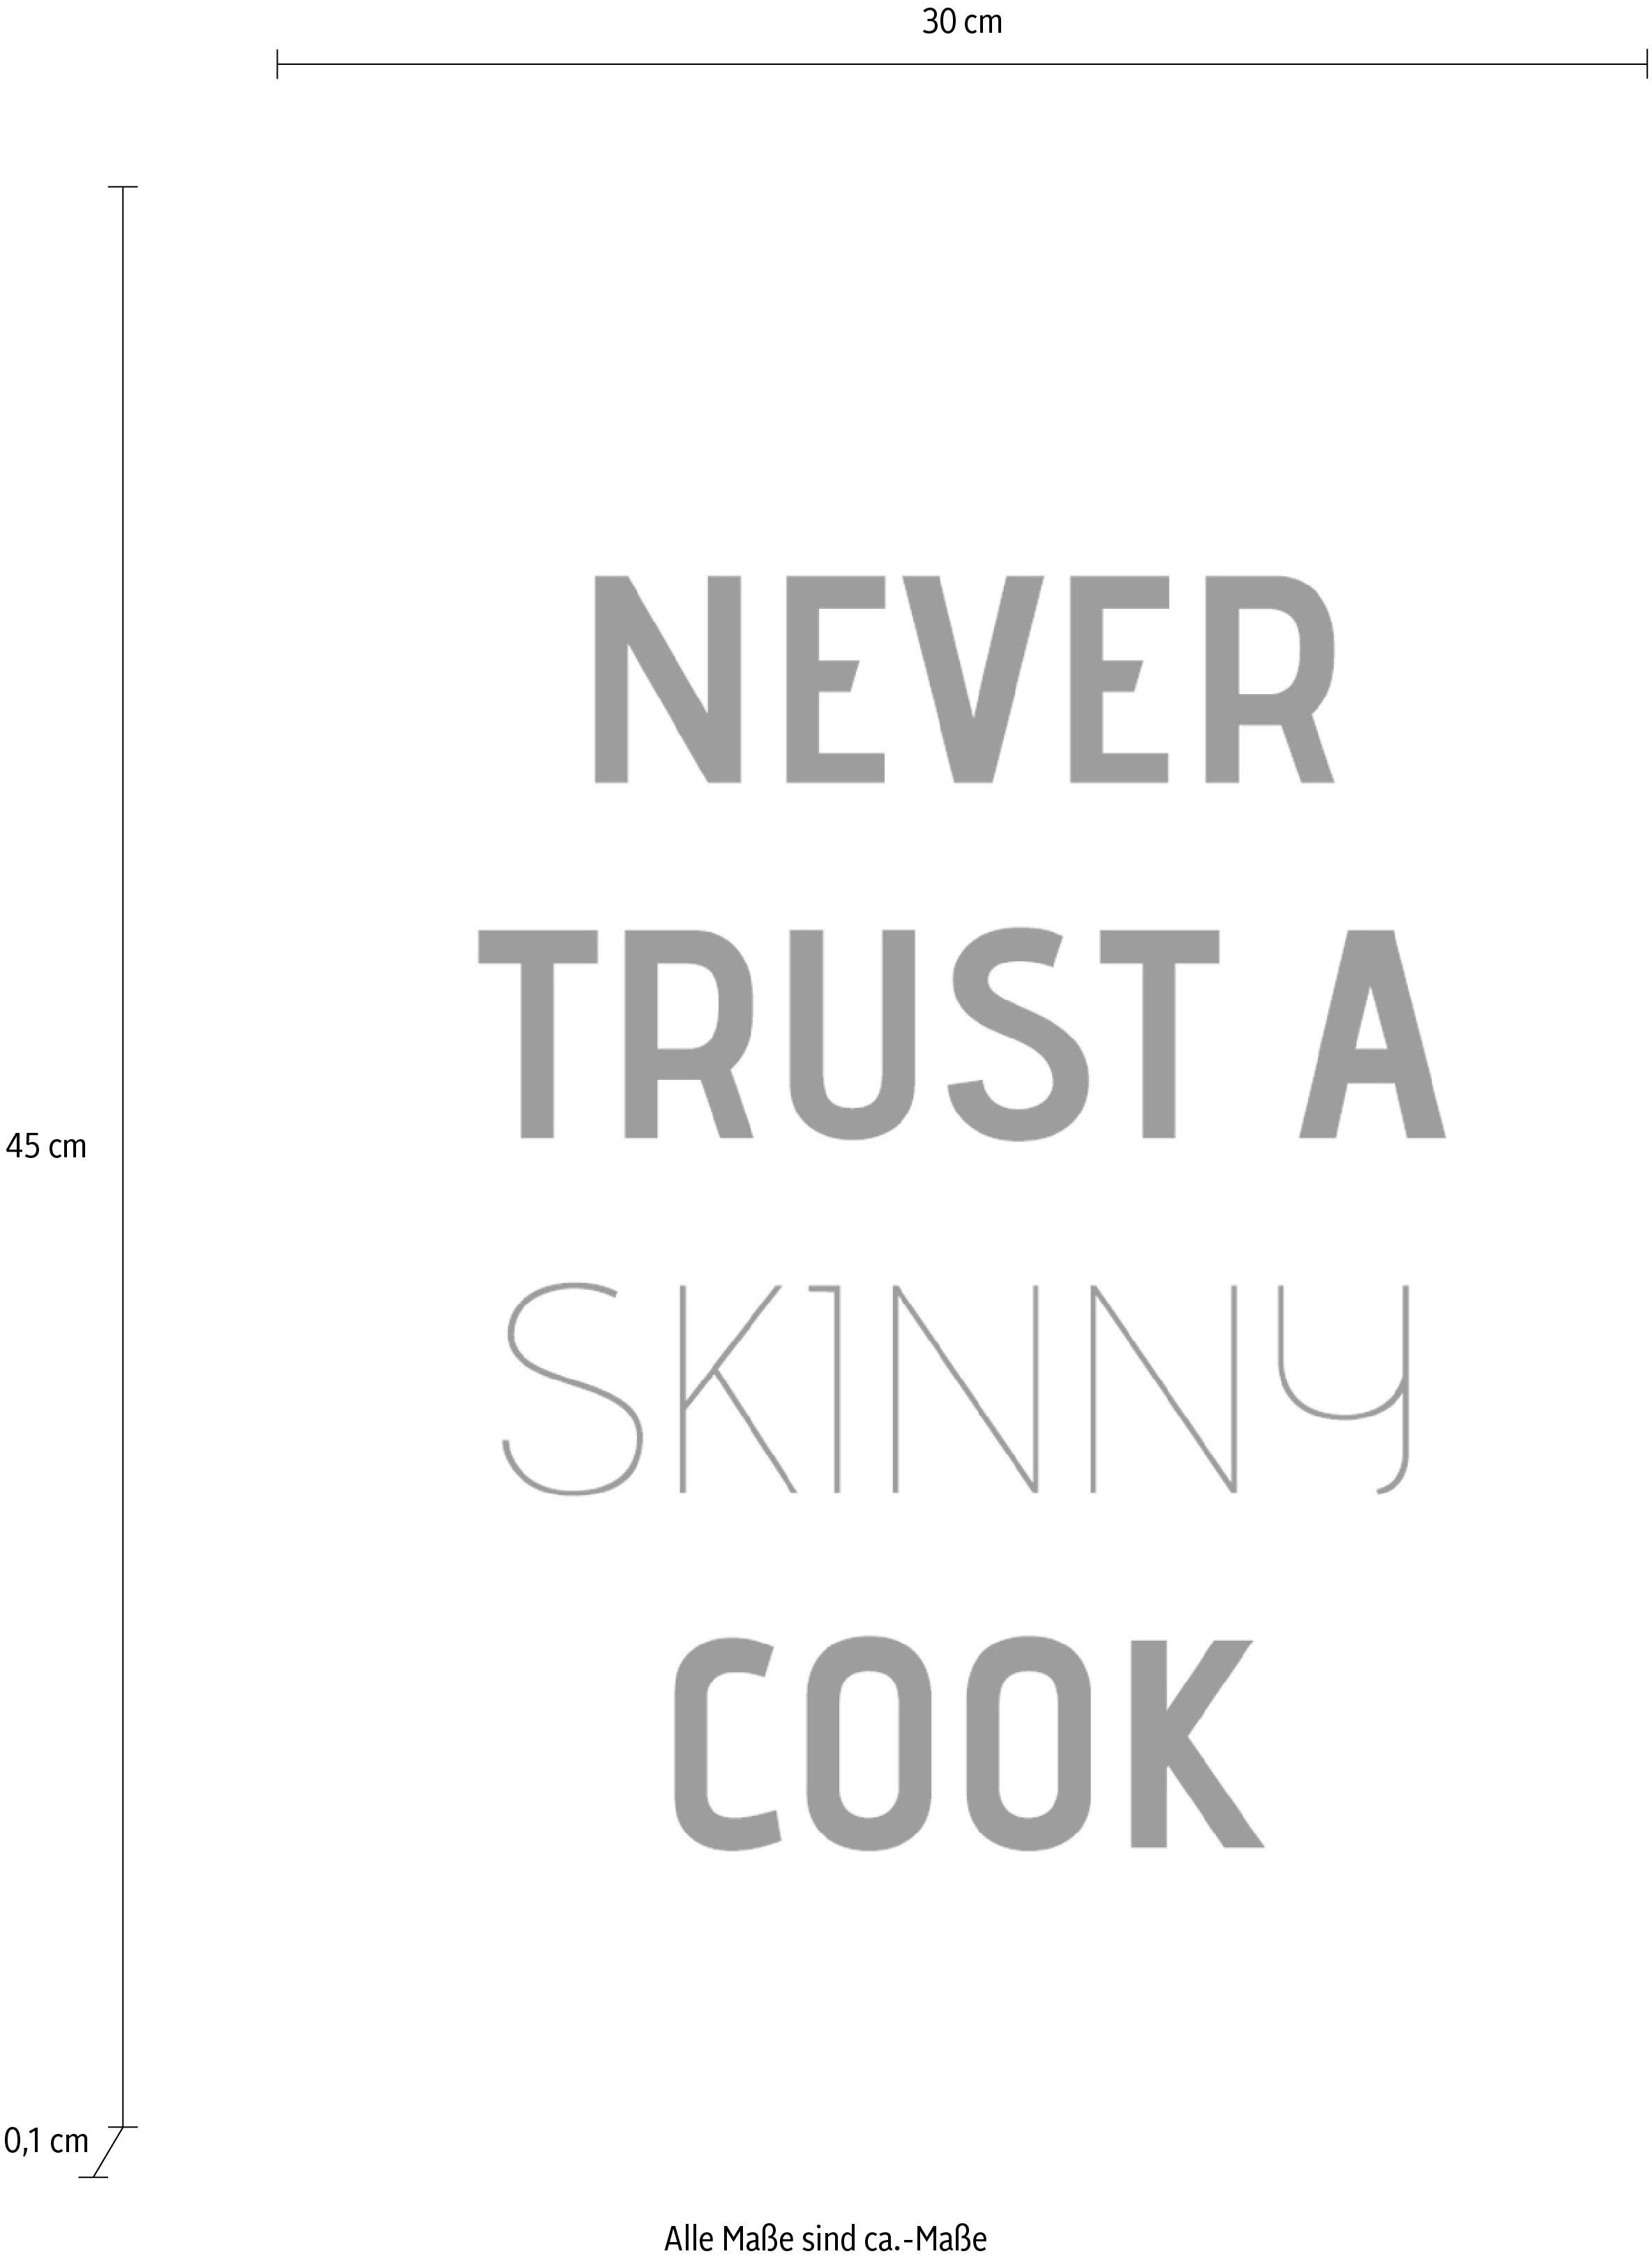 queence Wanddekoobjekt Schriftzug trust Stahlblech Never cook, a auf skinny